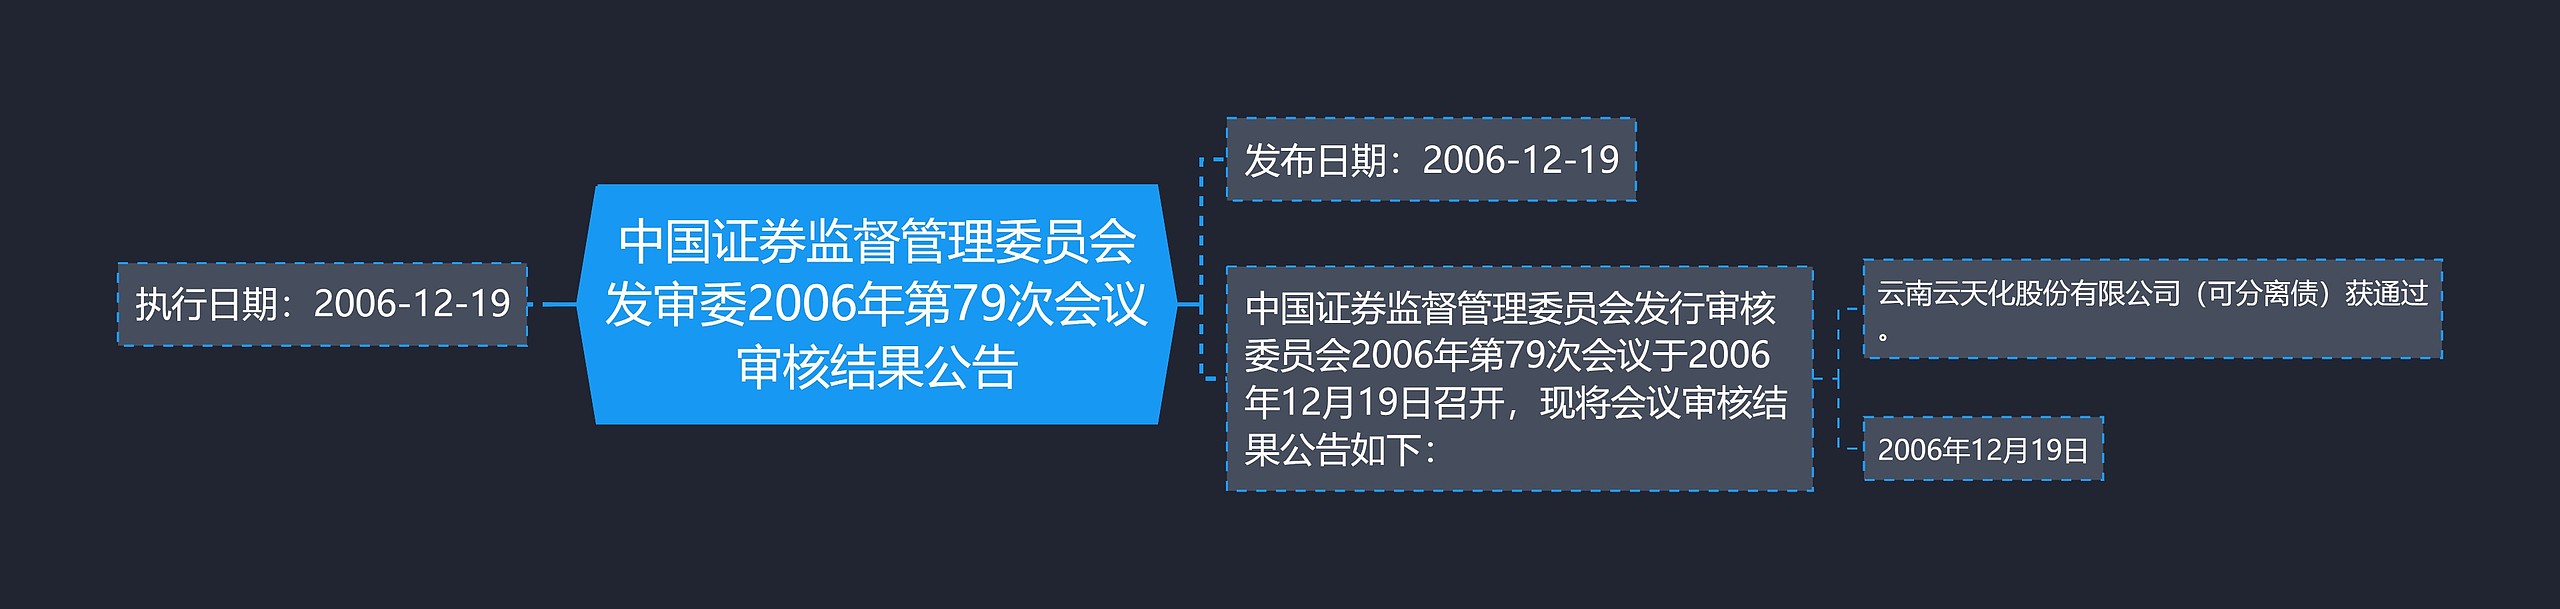 中国证券监督管理委员会发审委2006年第79次会议审核结果公告